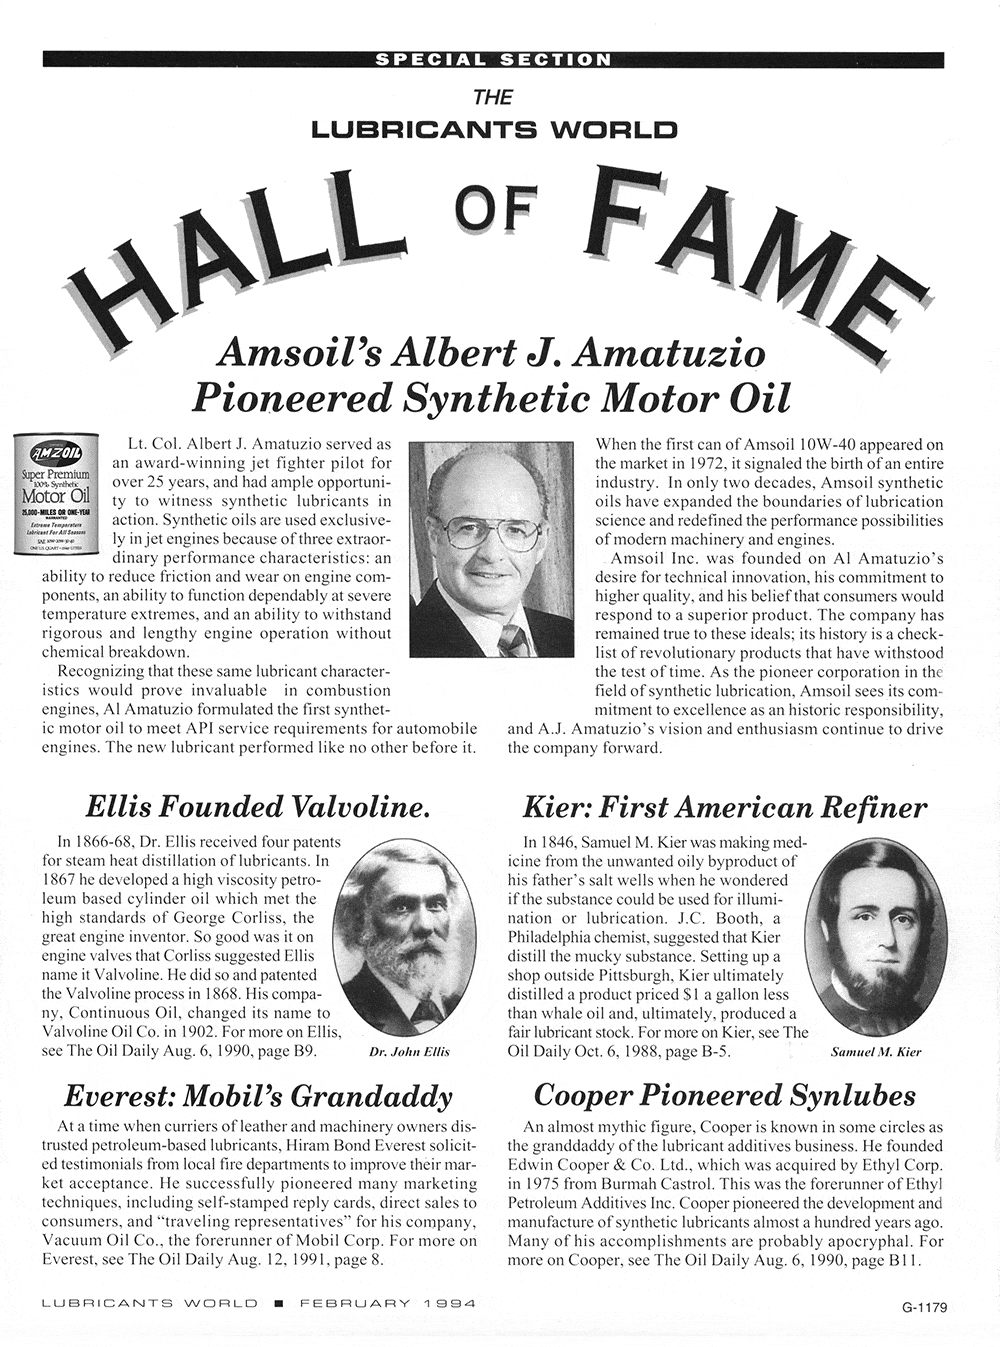 AMSOIL Hall of Fame